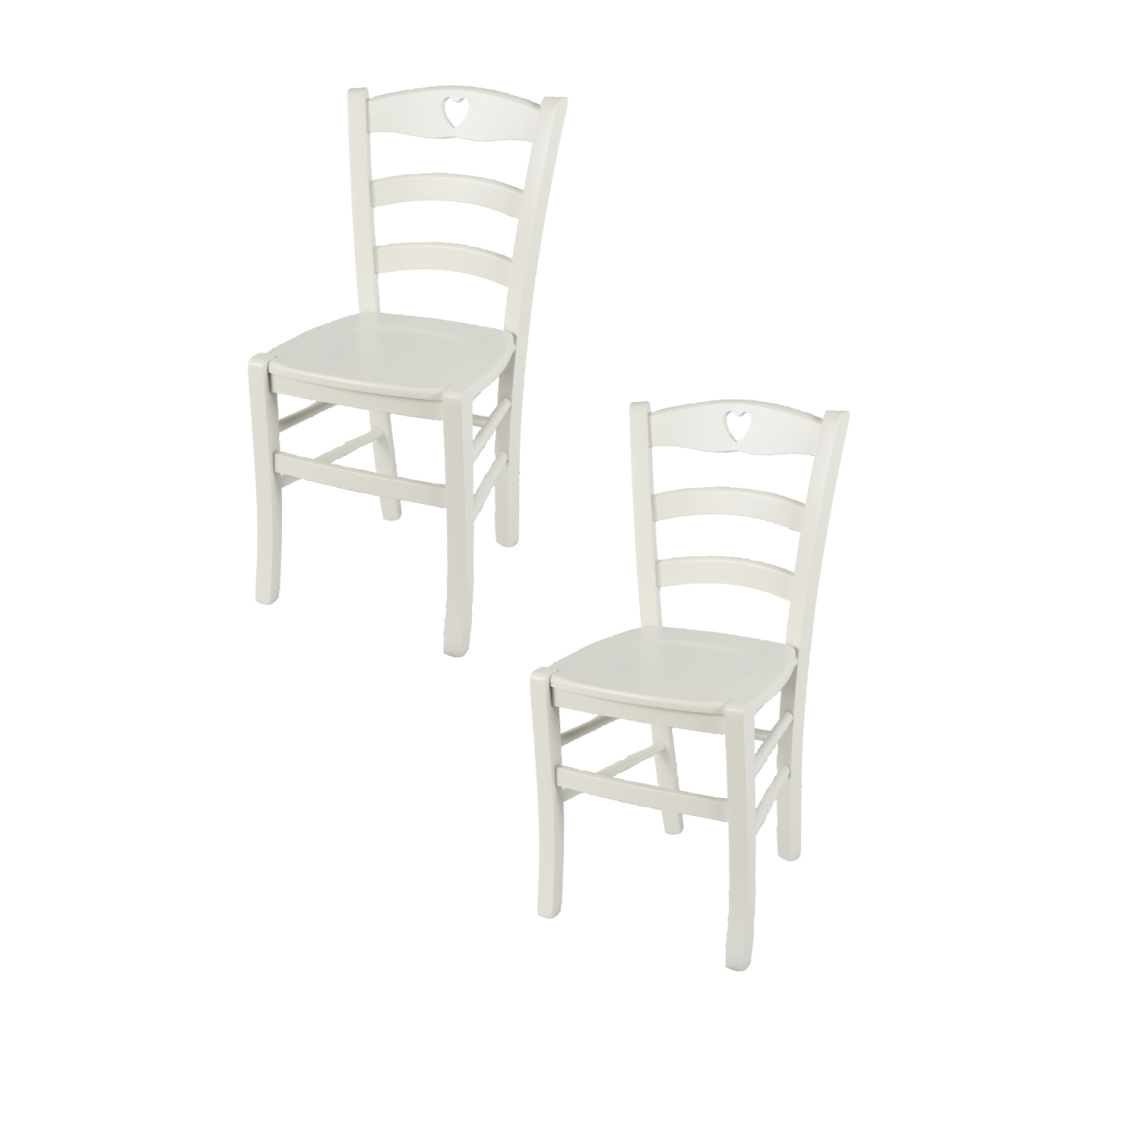 T M C S - t m c s Tommychairs - Set 2 Chaises CUORE pour cuisine, bar et salle à manger, robuste structure en bois de hêtre peindré en couleur blanc glace et assise en bois - Chaises